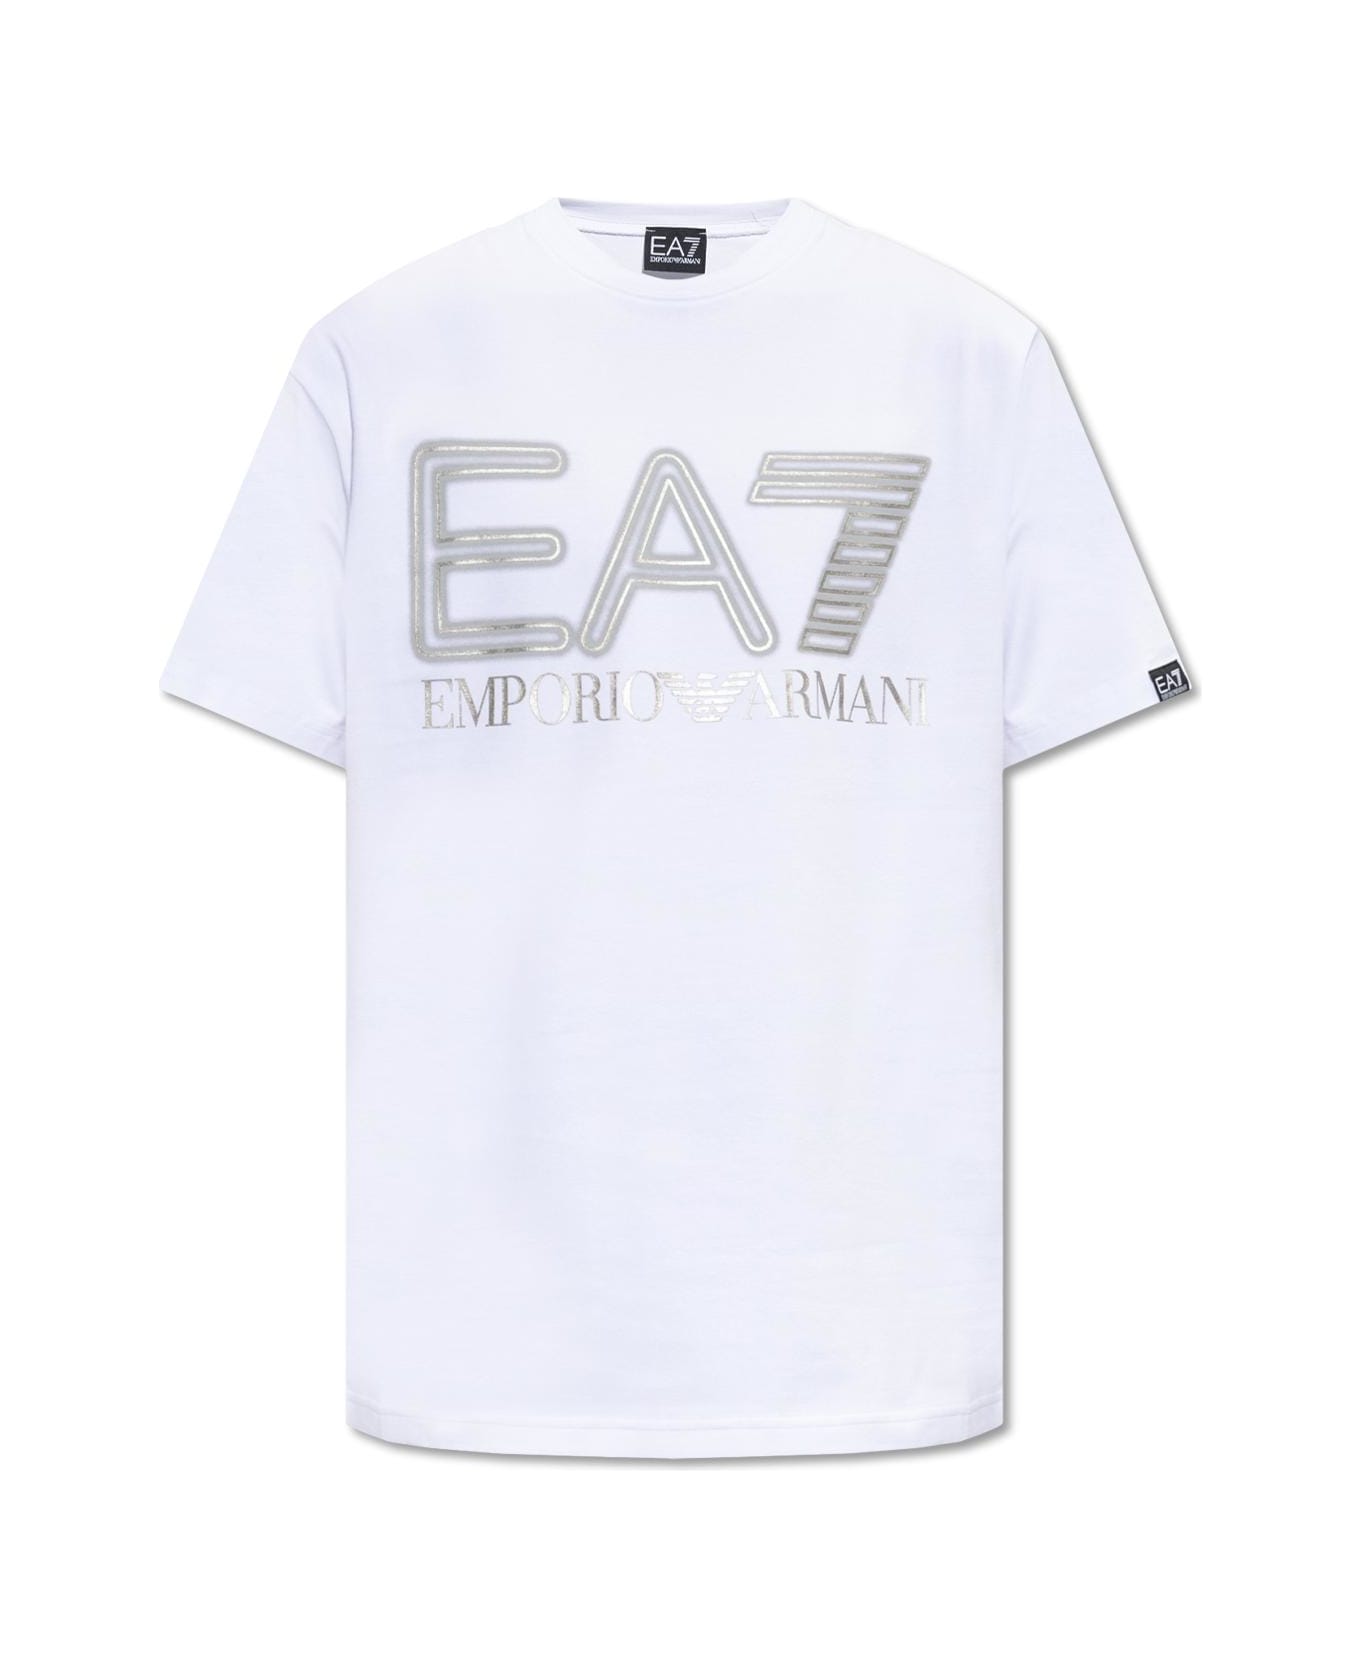 EA7 Emporio Armani T-shirt With Logo - White